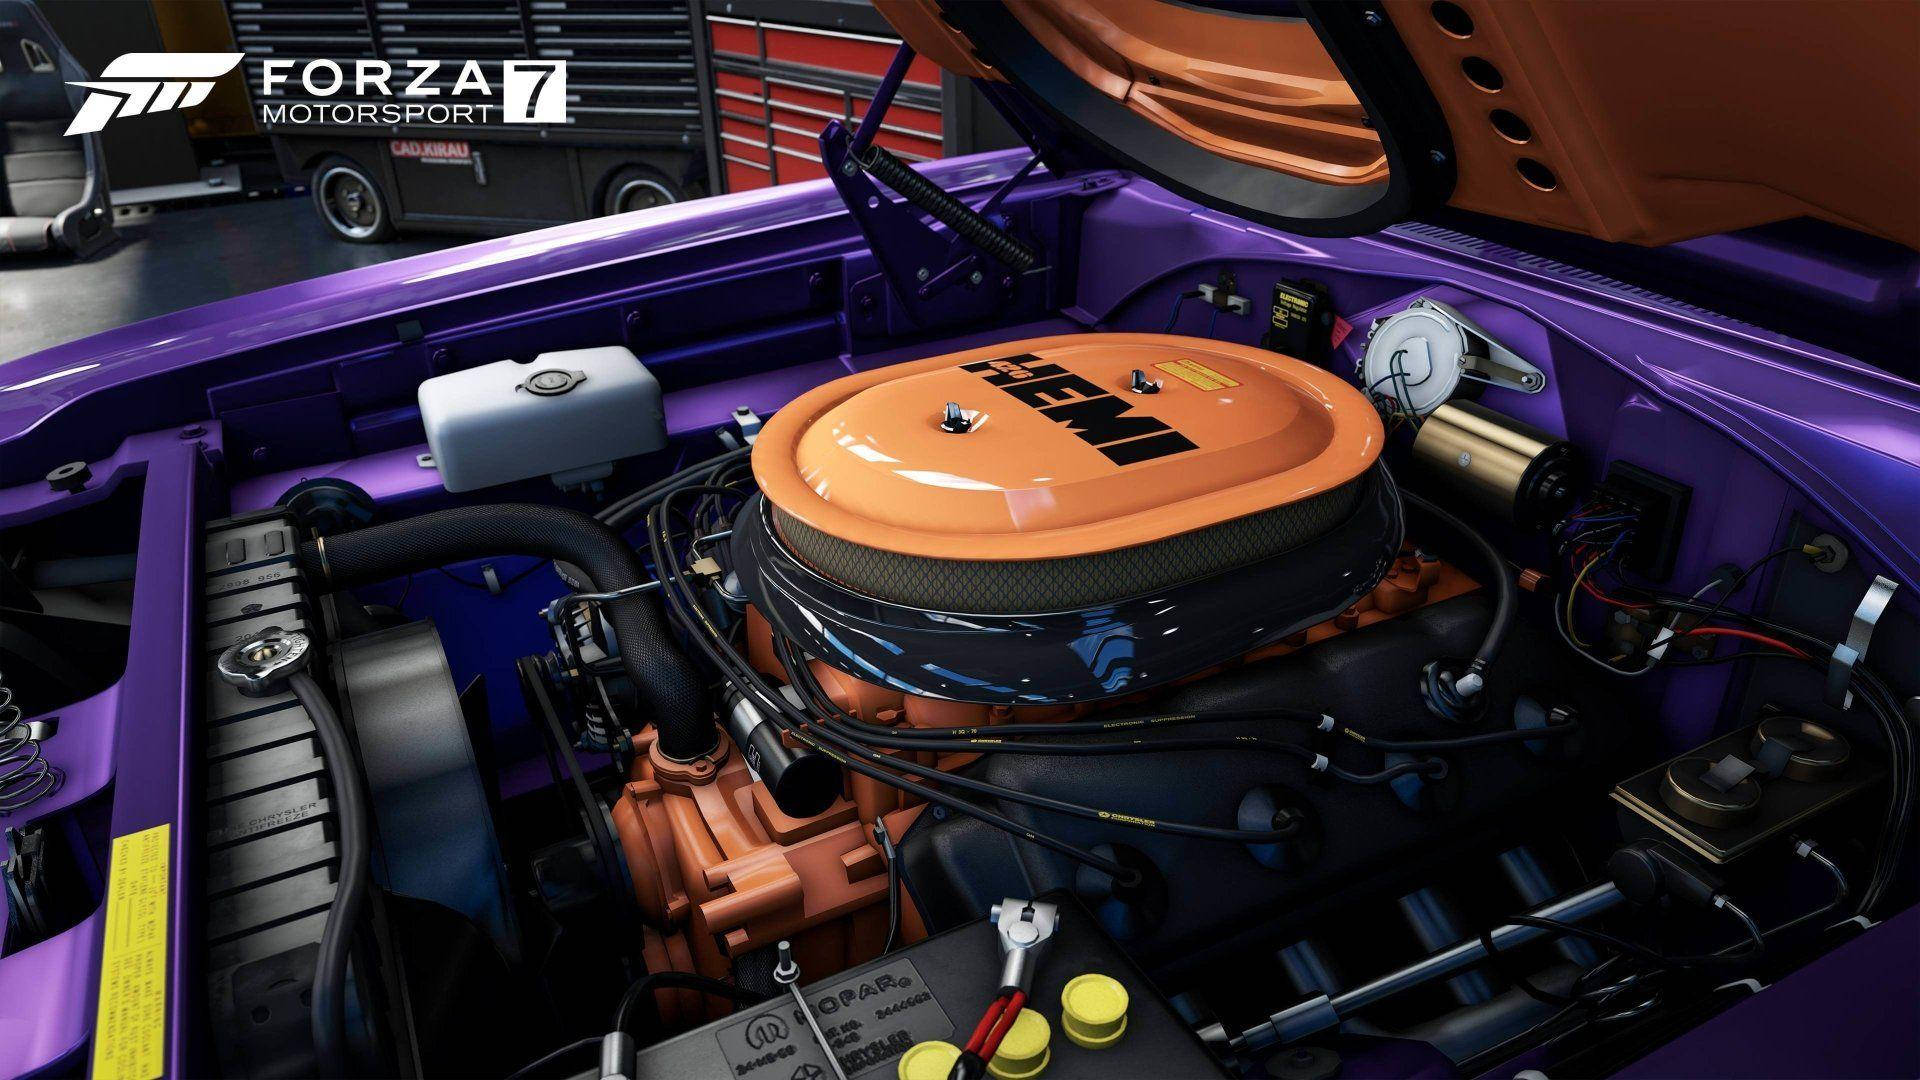 Forza7 Motor De Coche. Fondo de pantalla